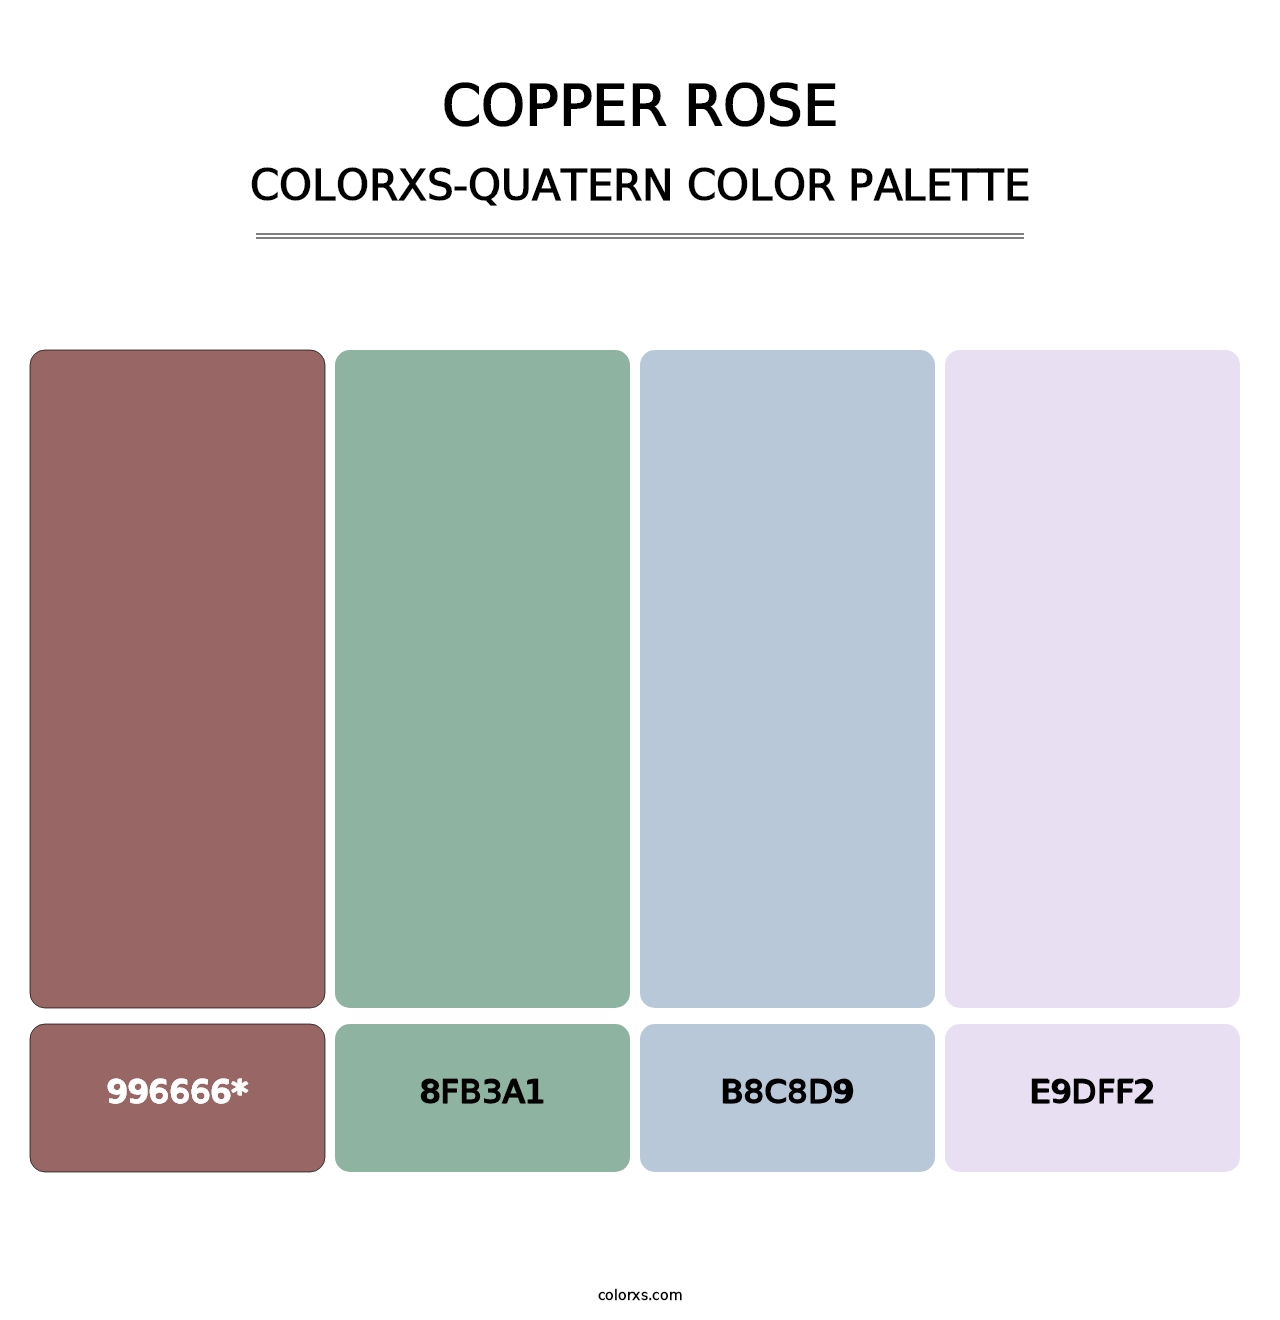 Copper rose - Colorxs Quatern Palette